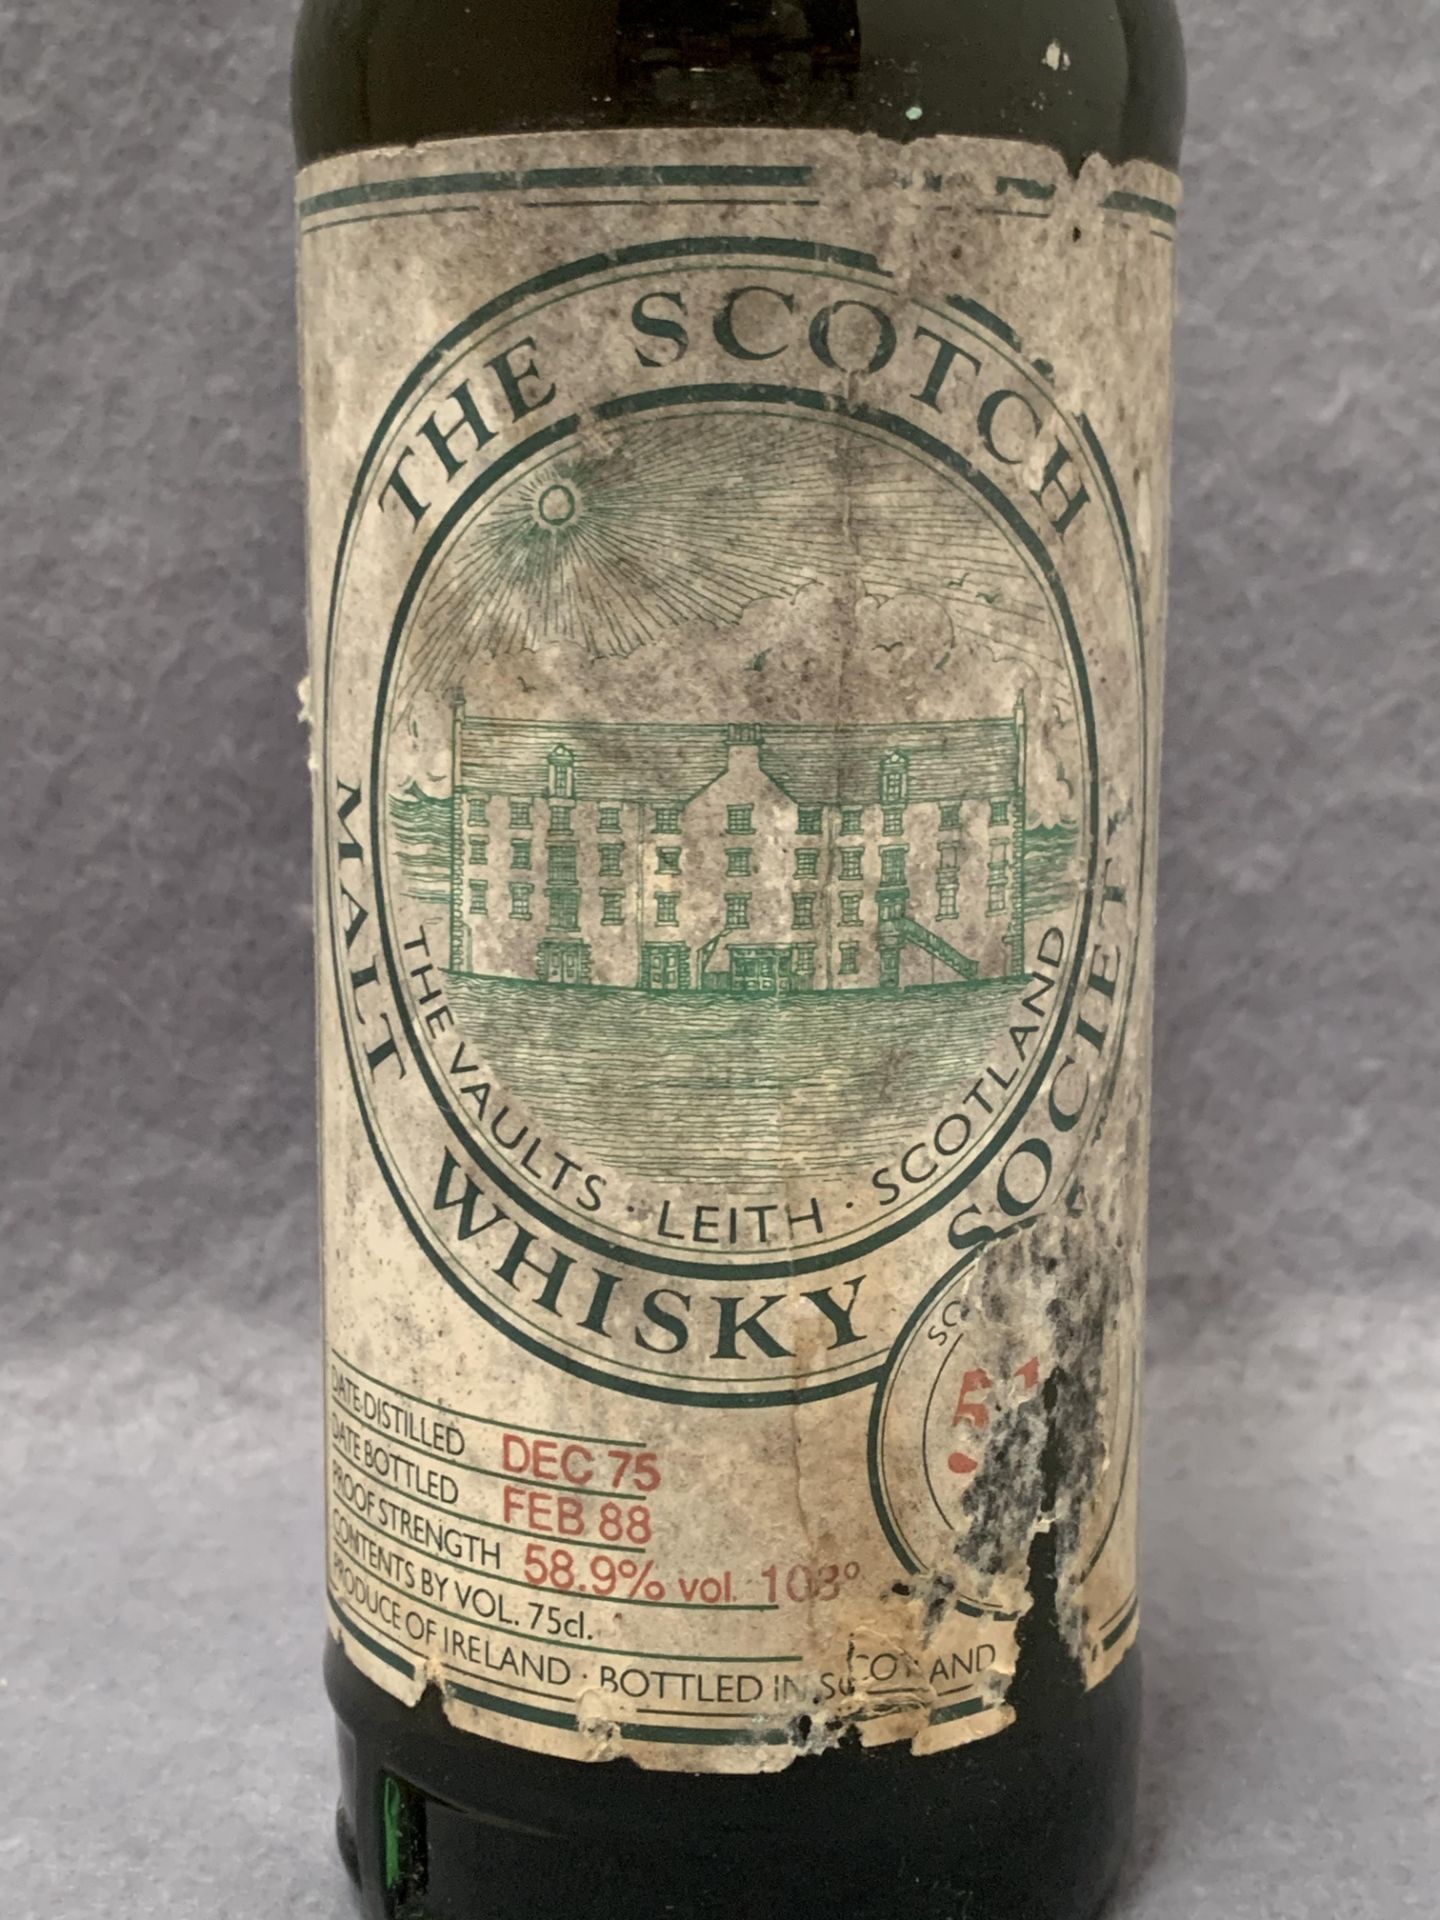 A 75cl bottle of The Scotch Malt Whisky Society whisky, cask no. 51. - Image 2 of 2